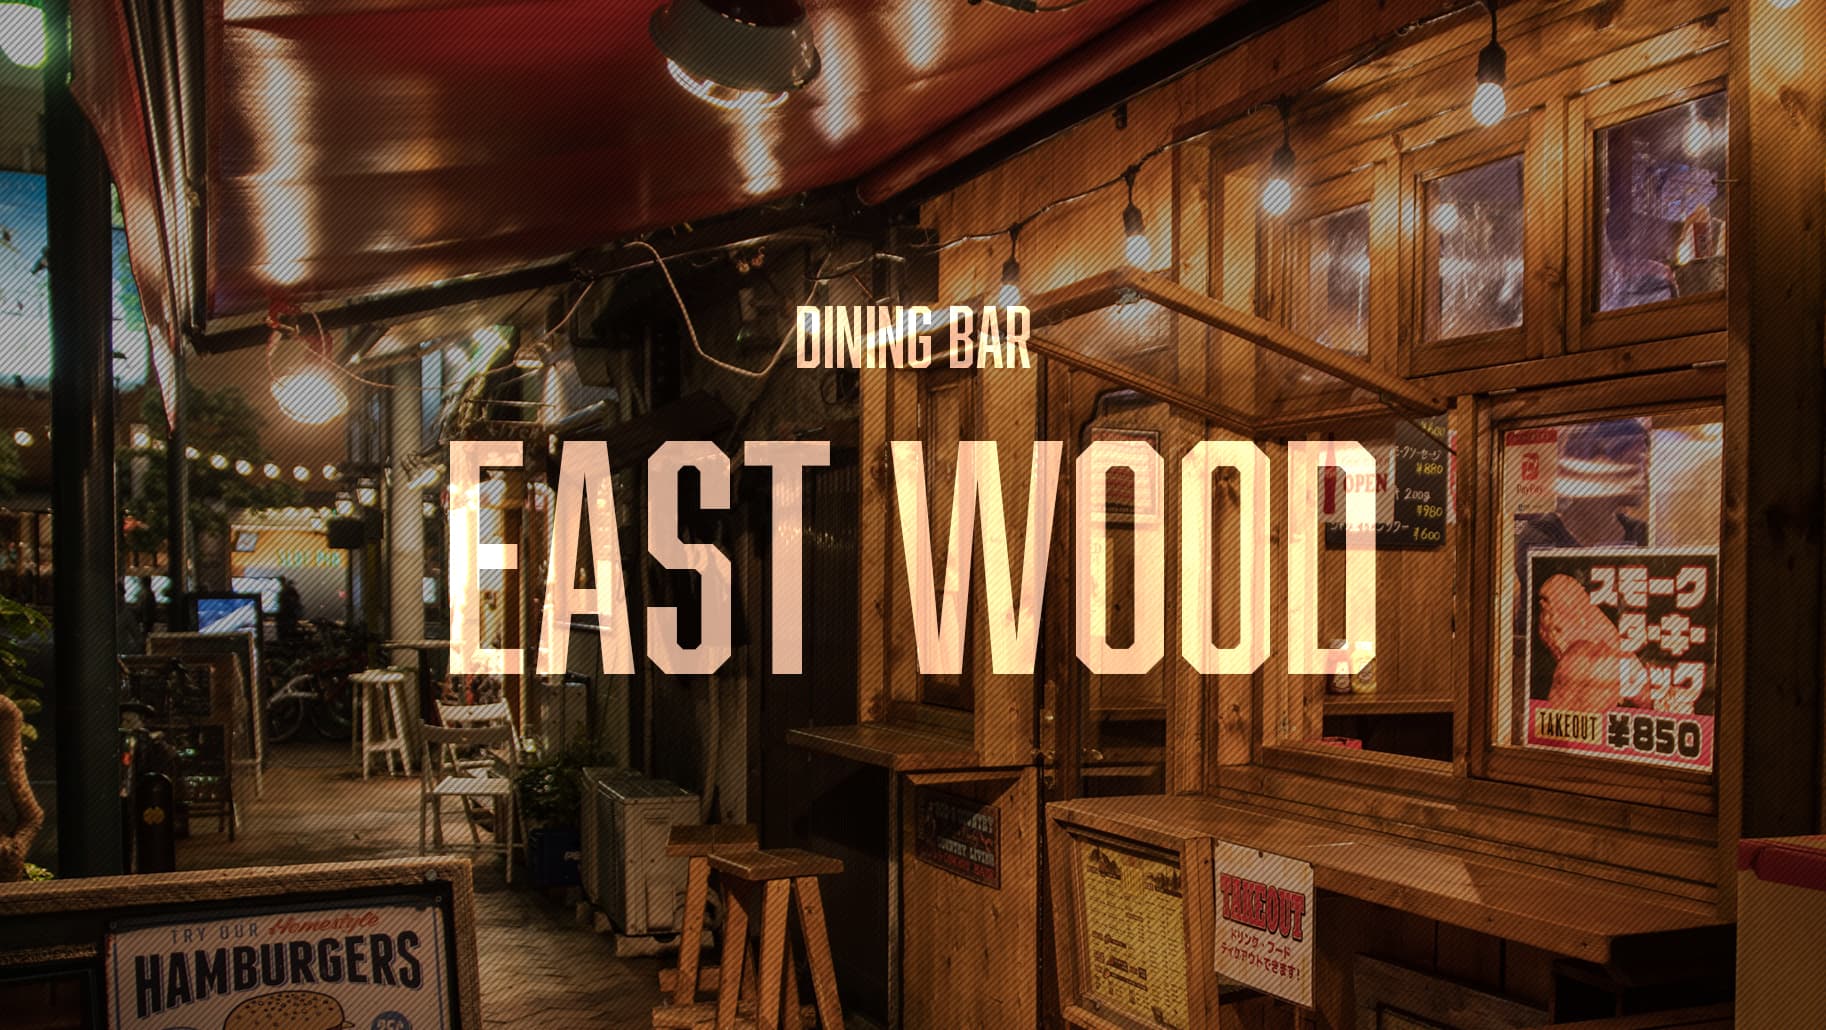 East wood